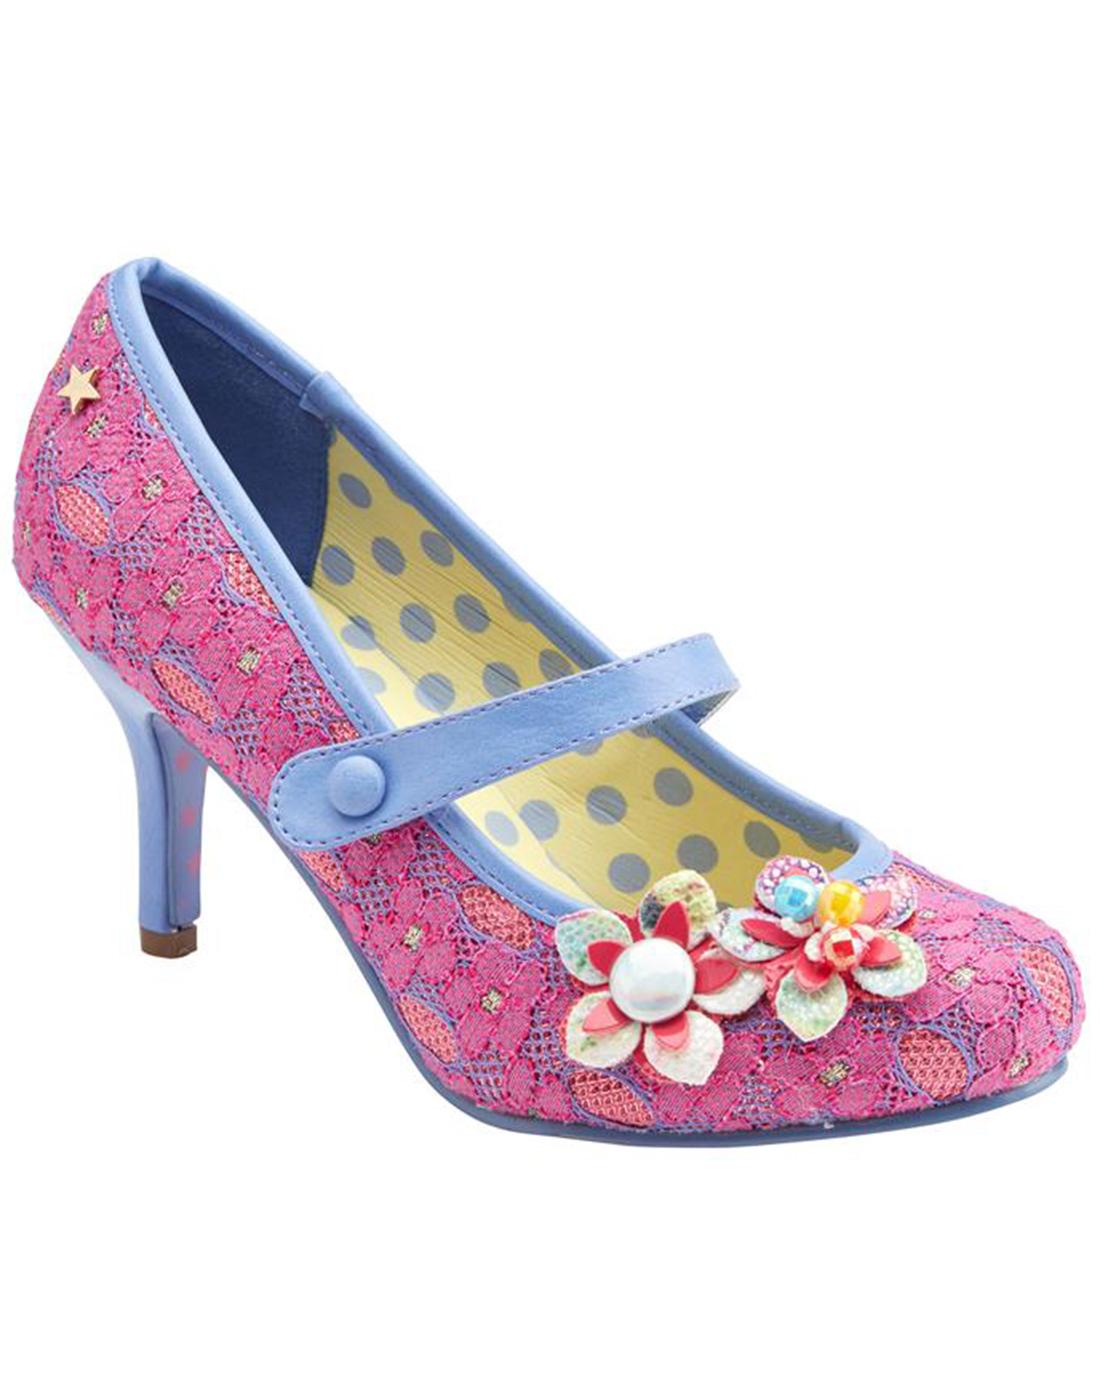 Malia JOE BROWNS Vintage lace Pink floral Heels